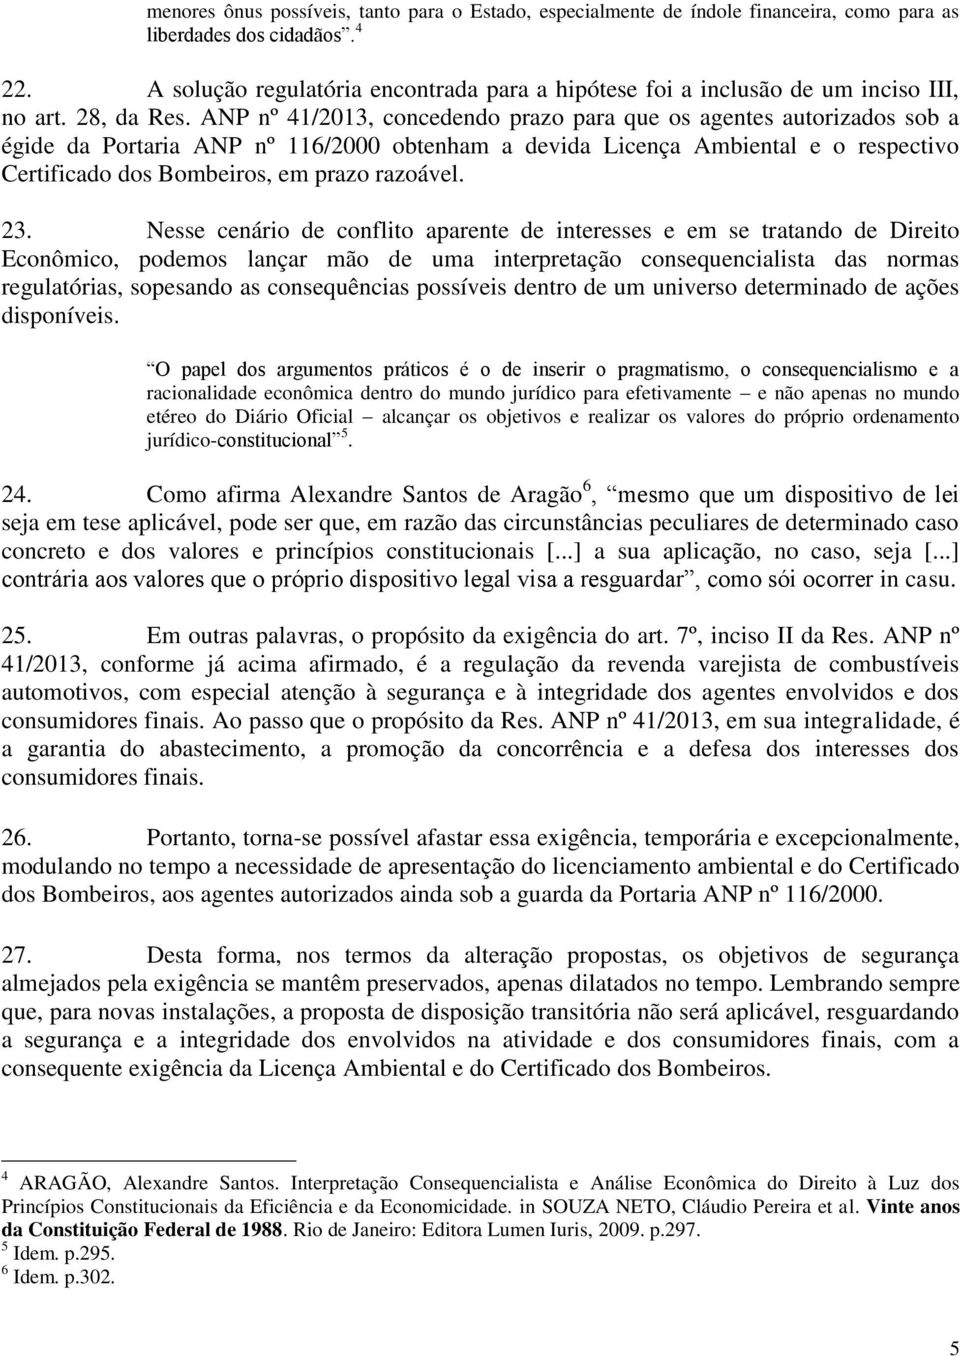 ANP nº 41/2013, concedendo prazo para que os agentes autorizados sob a égide da Portaria ANP nº 116/2000 obtenham a devida Licença Ambiental e o respectivo Certificado dos Bombeiros, em prazo